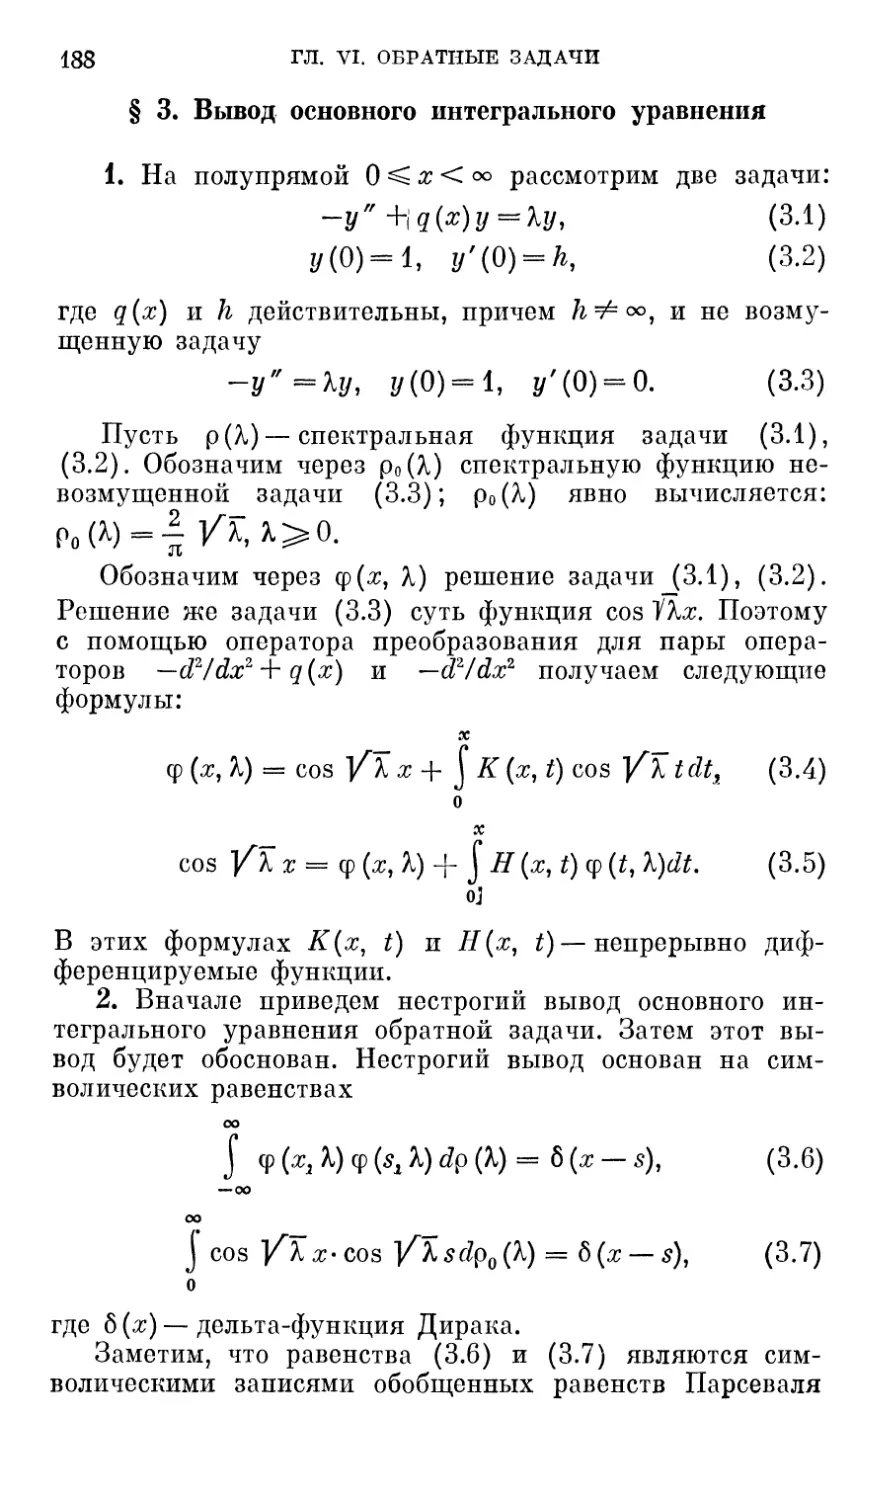 § 3. Вывод основного интегрального уравнения